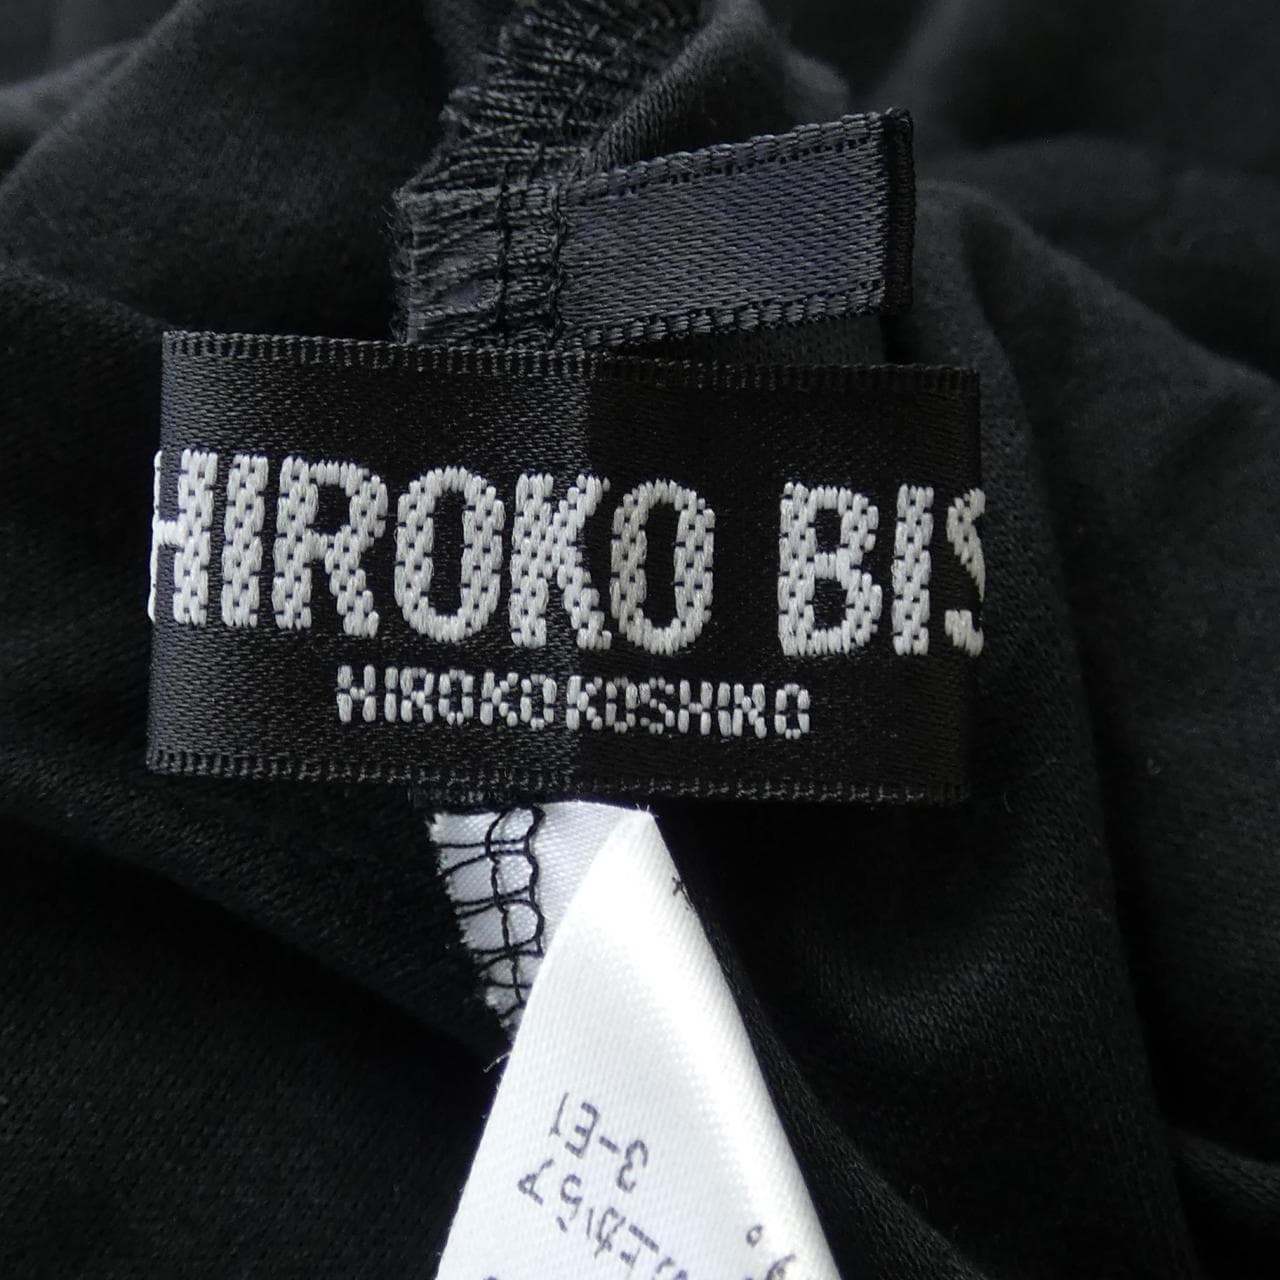 ヒロコ ビス HIROKO BIS ワンピース